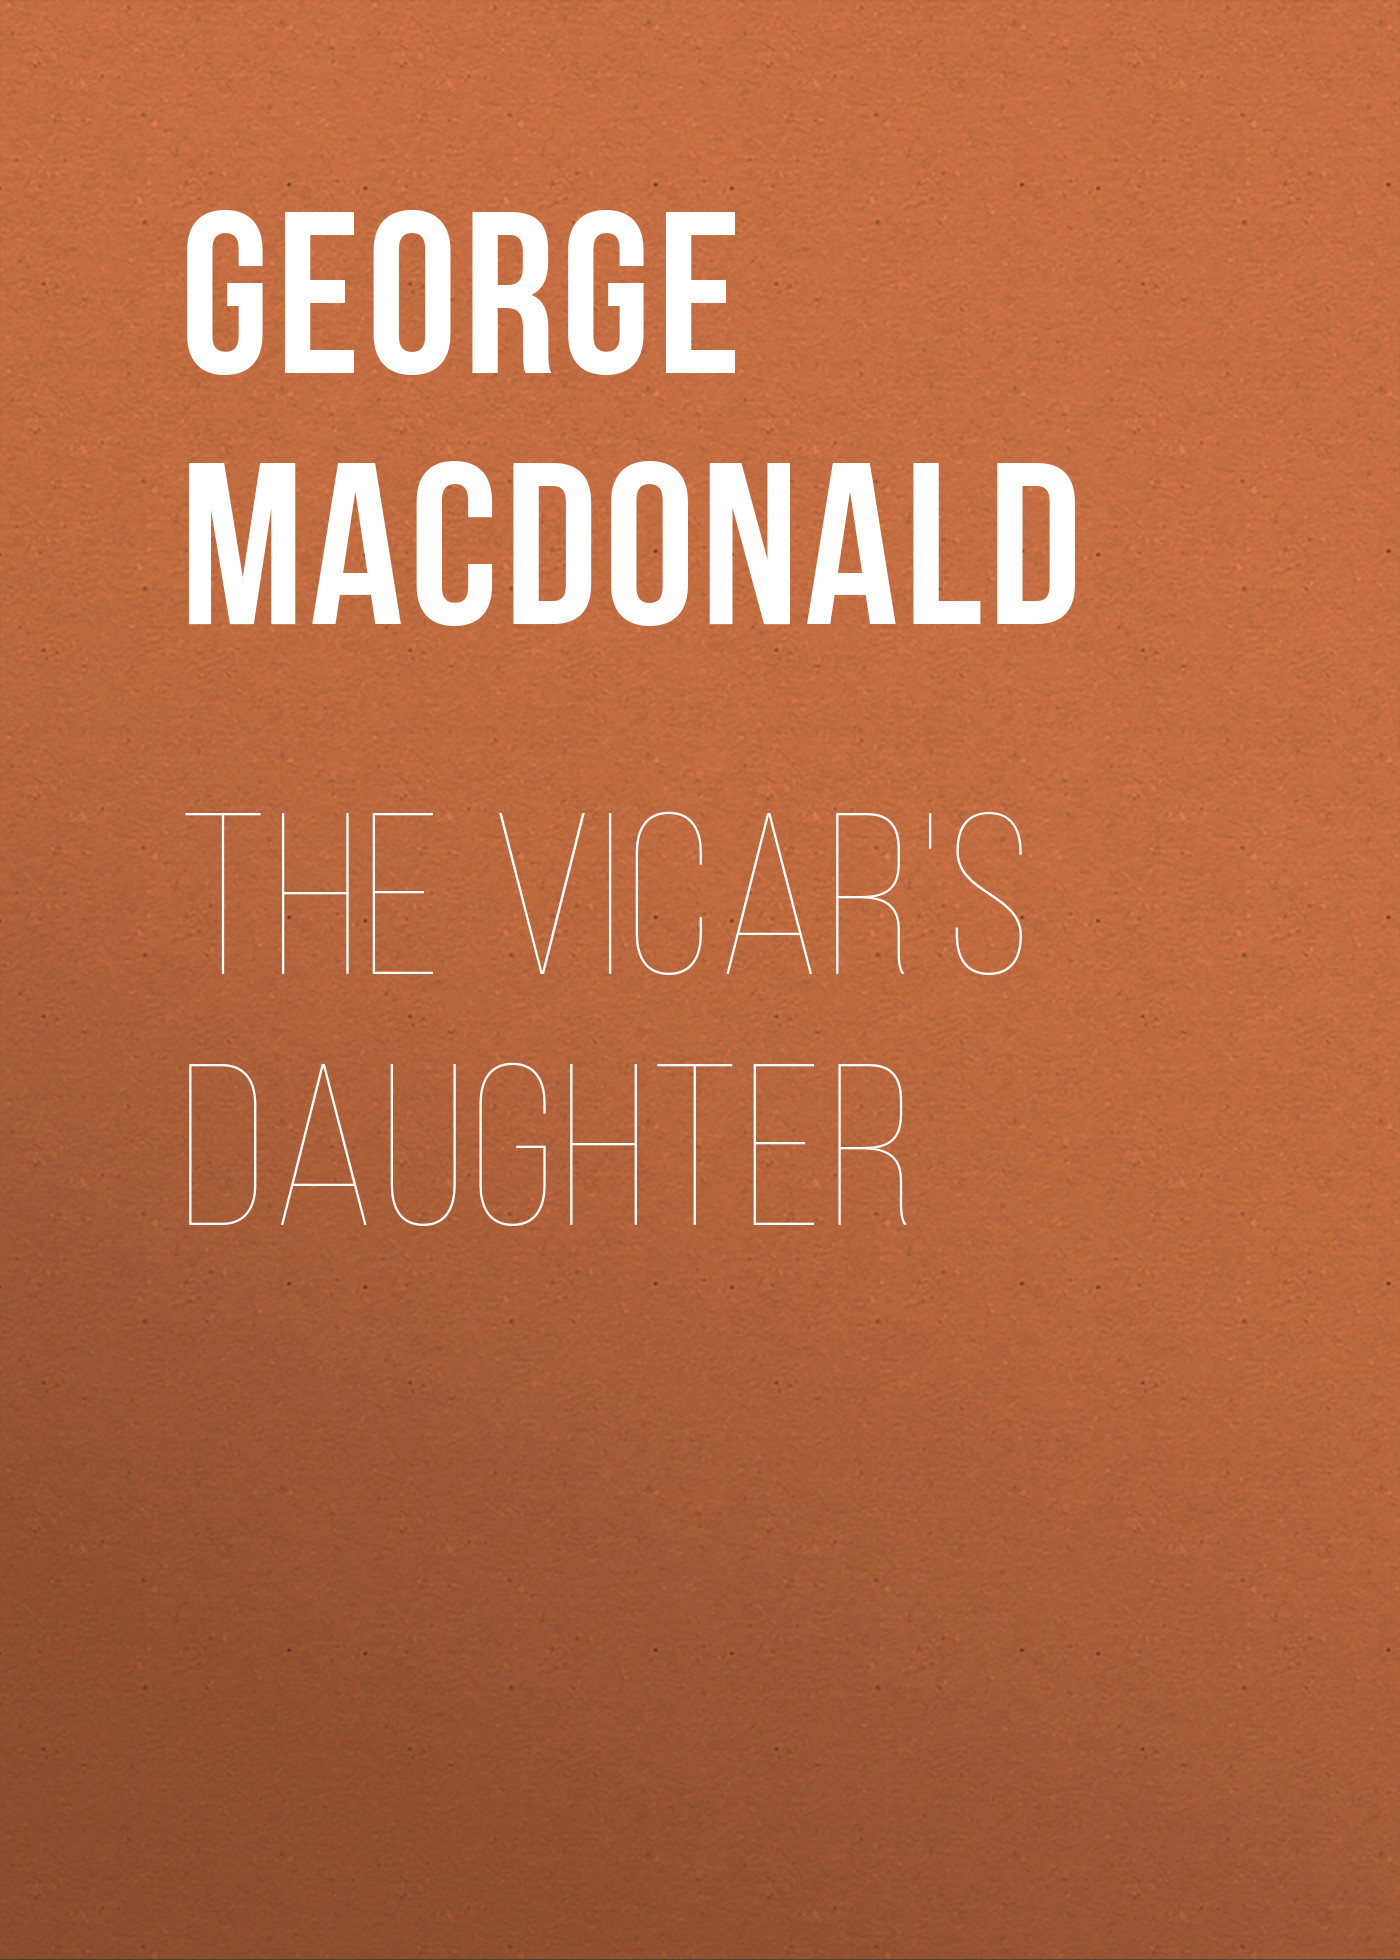 Книга The Vicar's Daughter из серии , созданная George MacDonald, может относится к жанру Зарубежная классика, Зарубежная эзотерическая и религиозная литература, Зарубежная старинная литература. Стоимость электронной книги The Vicar's Daughter с идентификатором 35007577 составляет 0 руб.